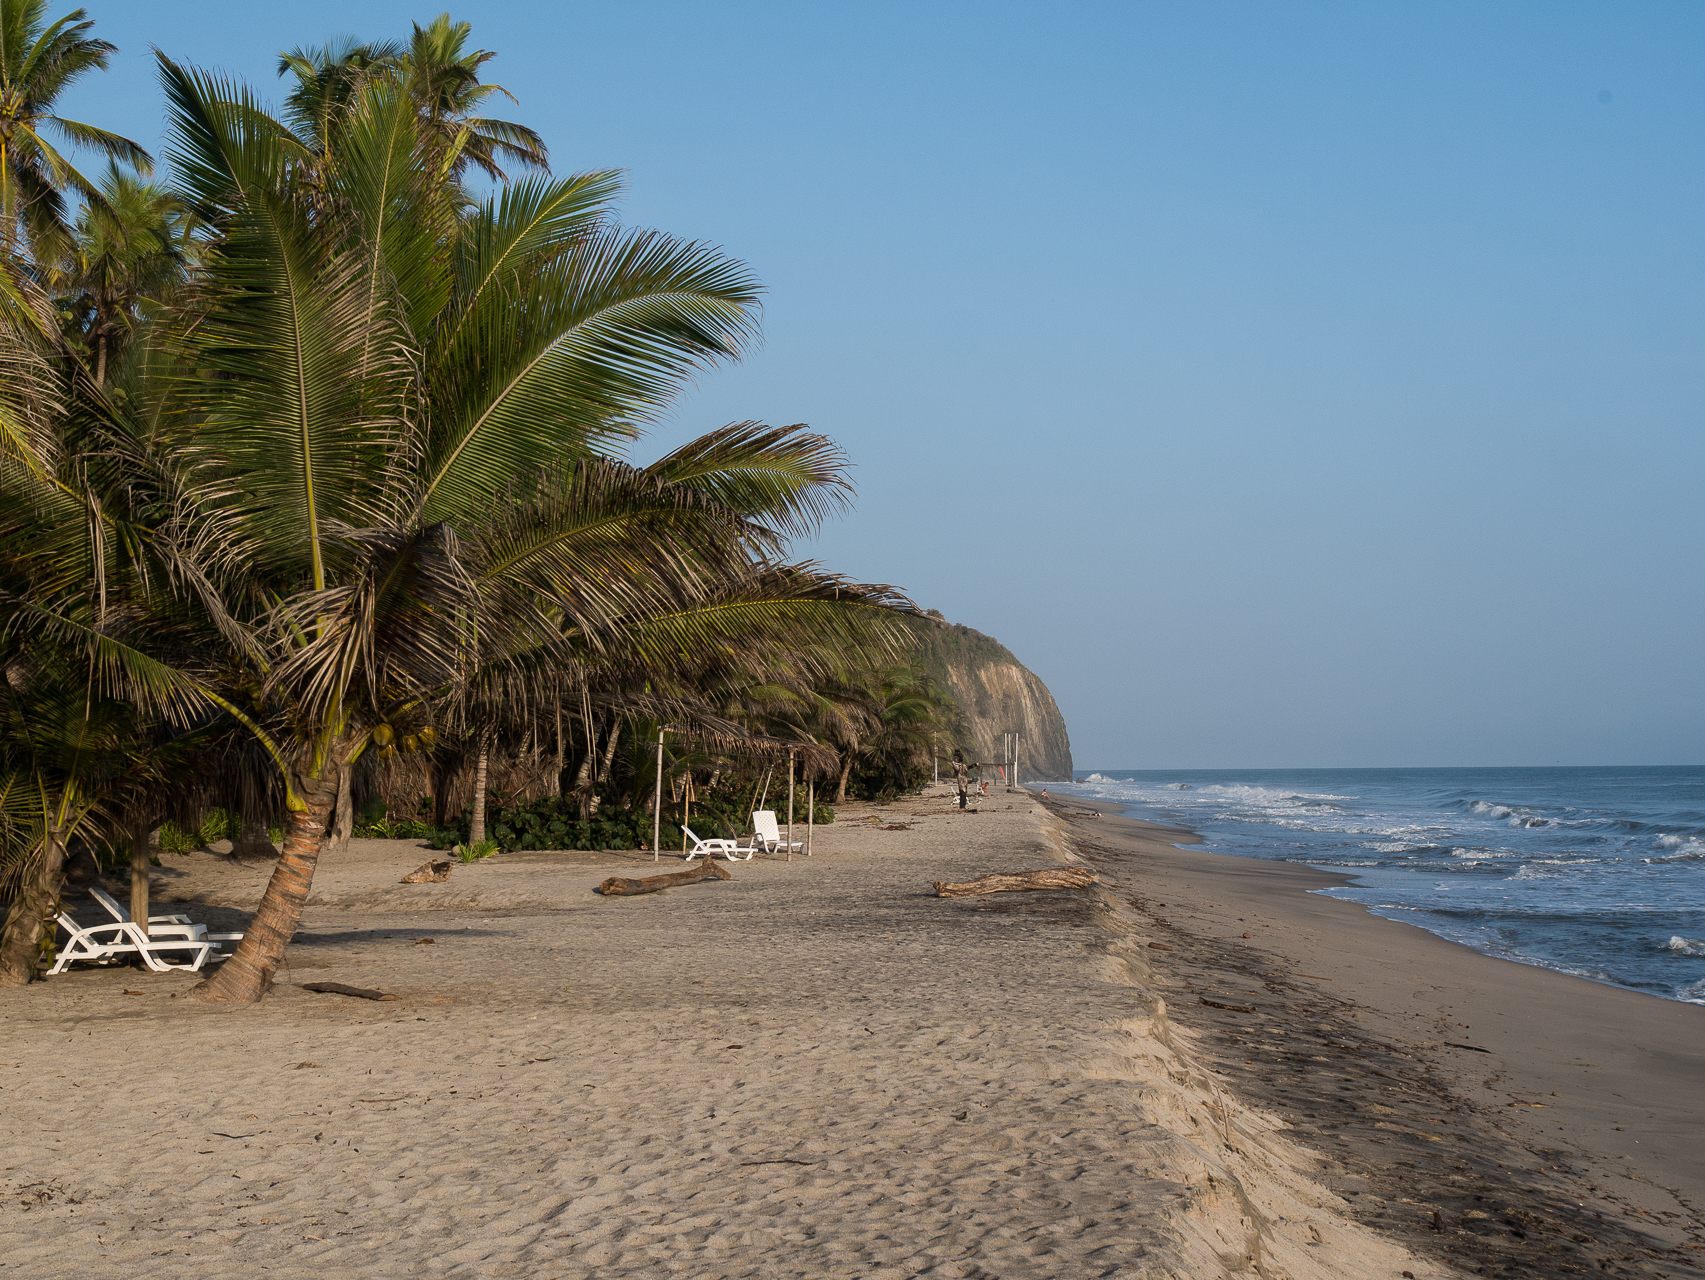 La plage de l'hôtel - La côte Caraïbe